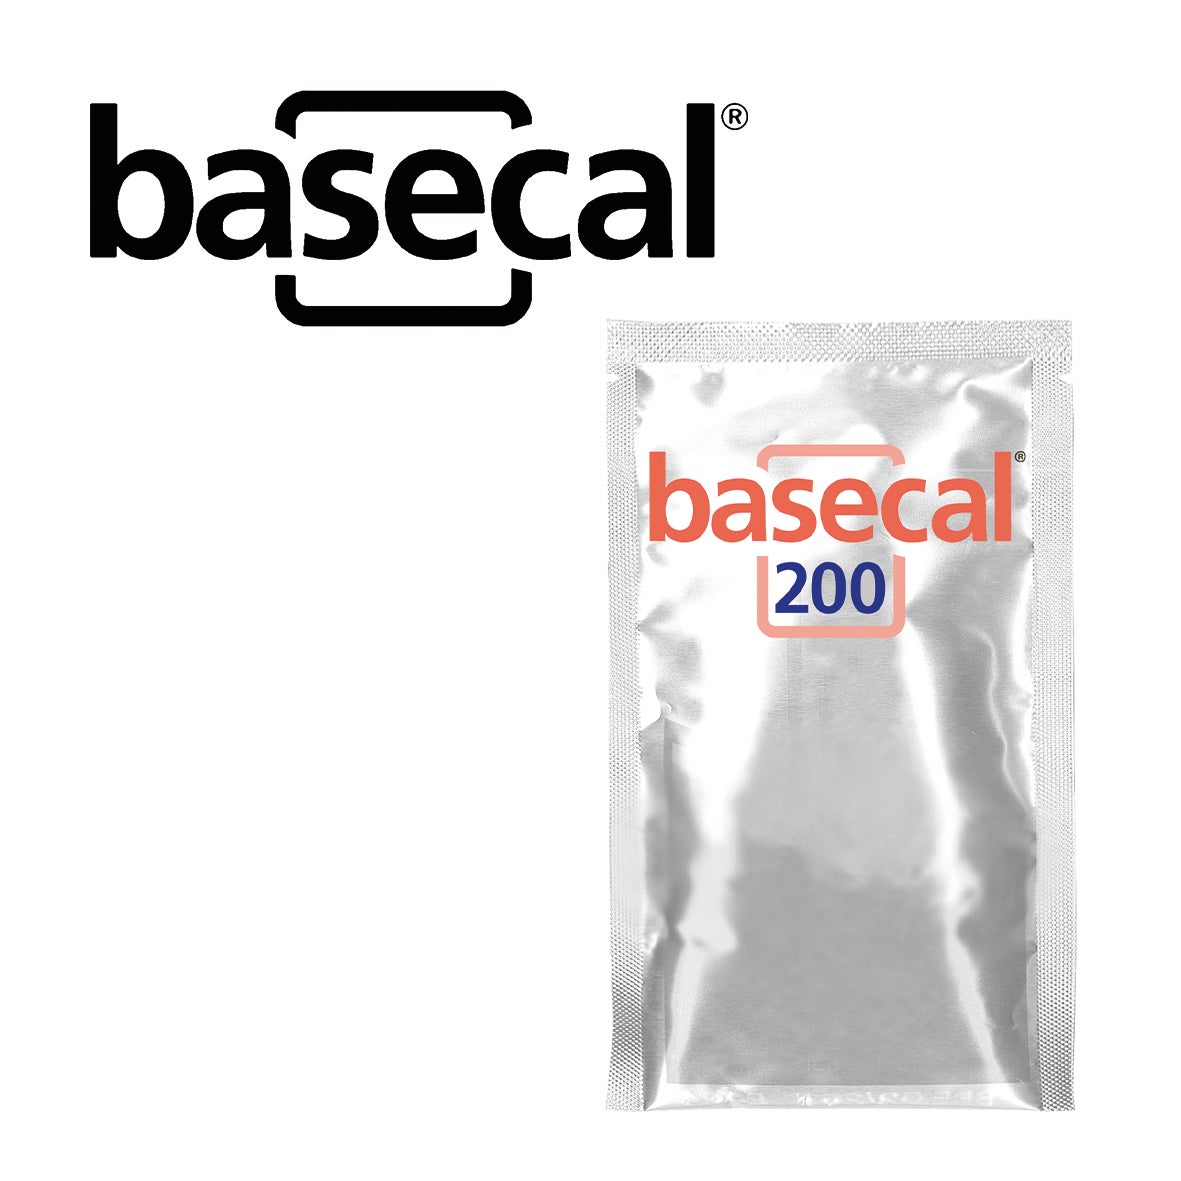 basecal